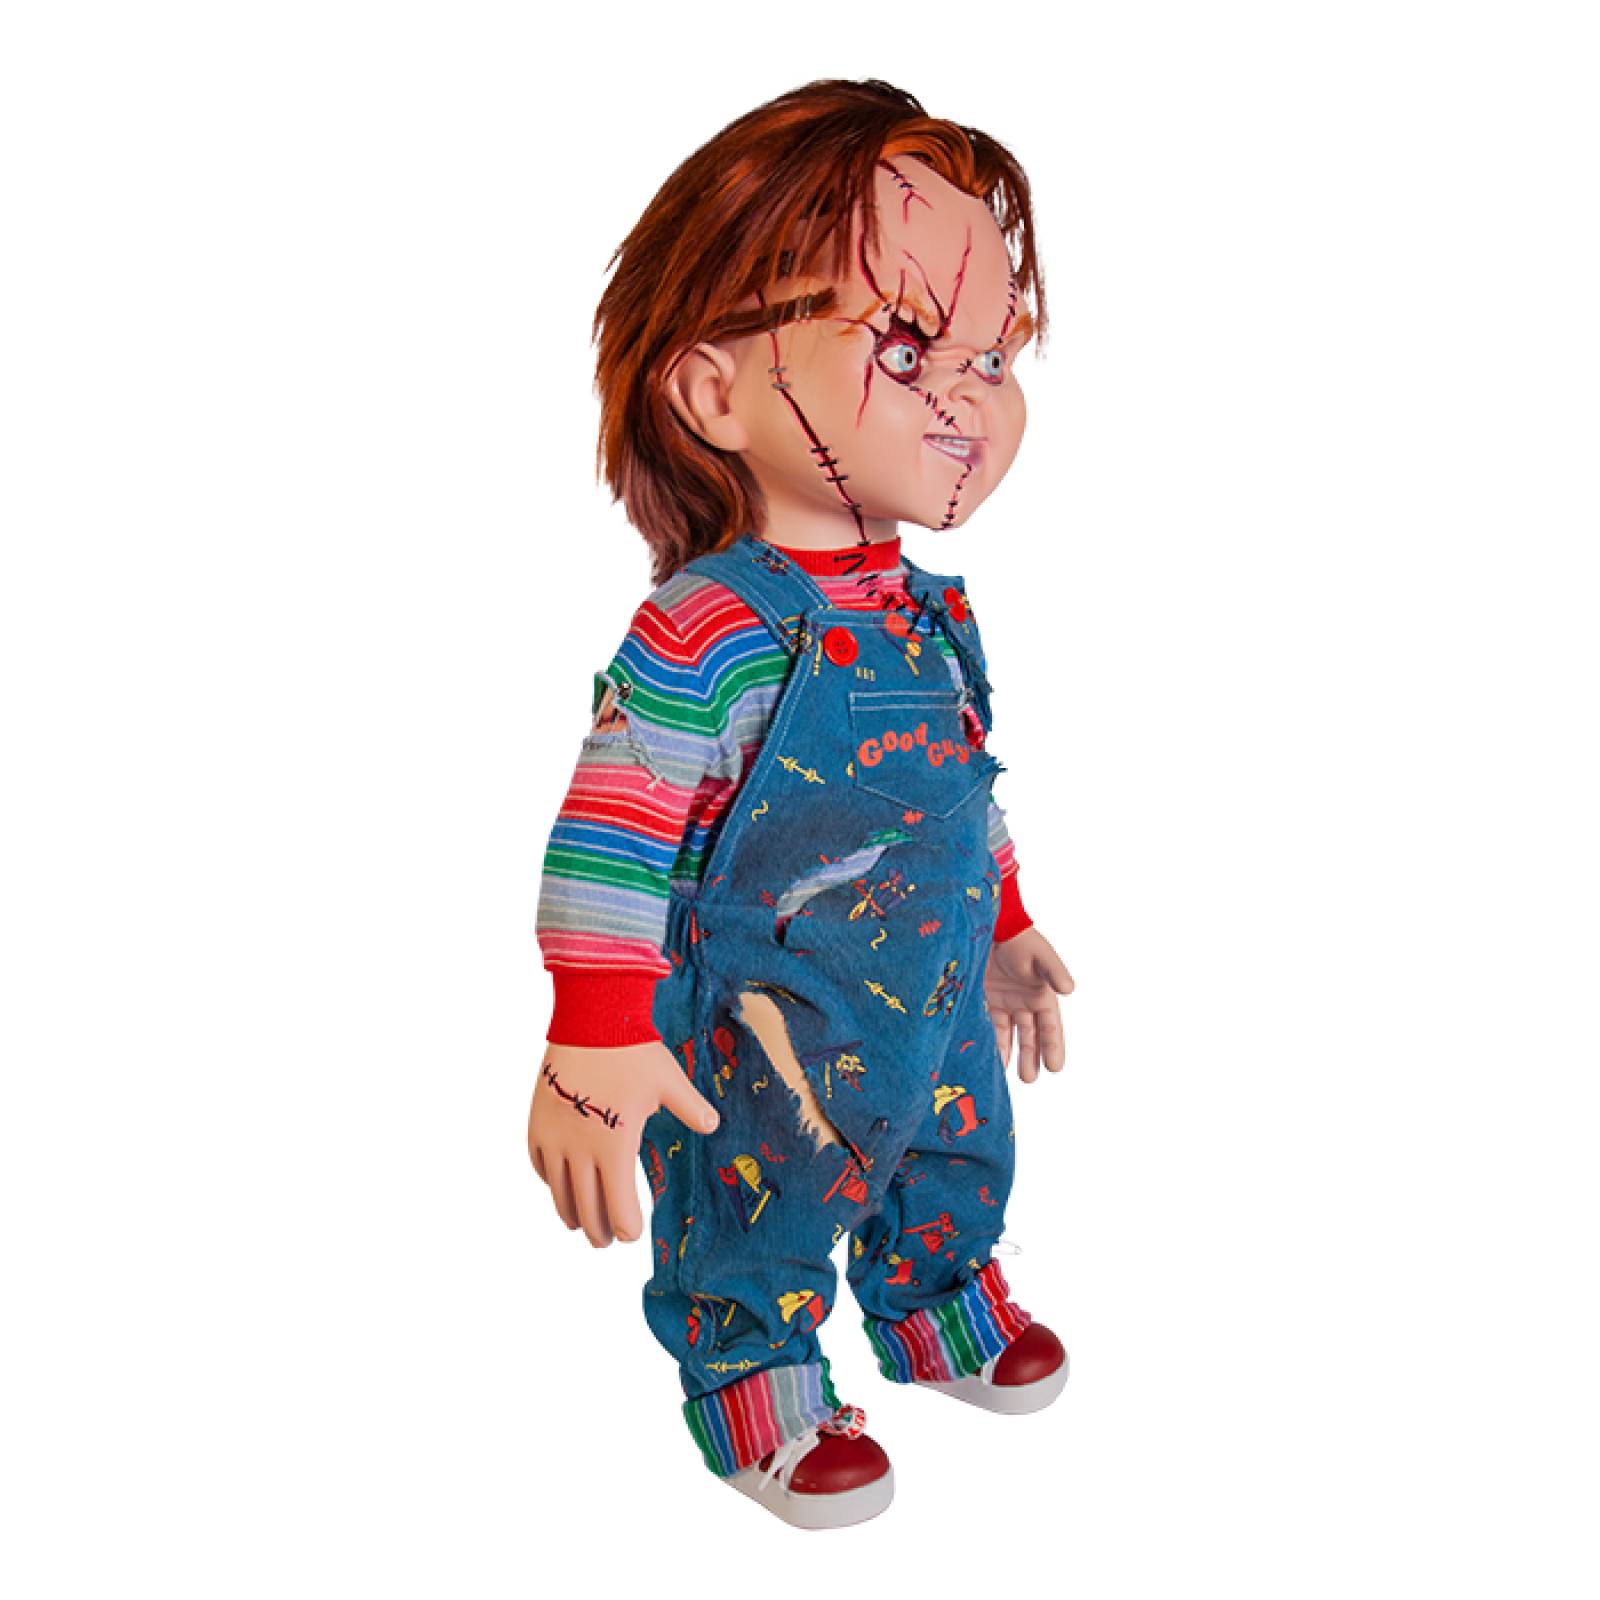 Decorativo de Colección Chucky - Seed of Chucky